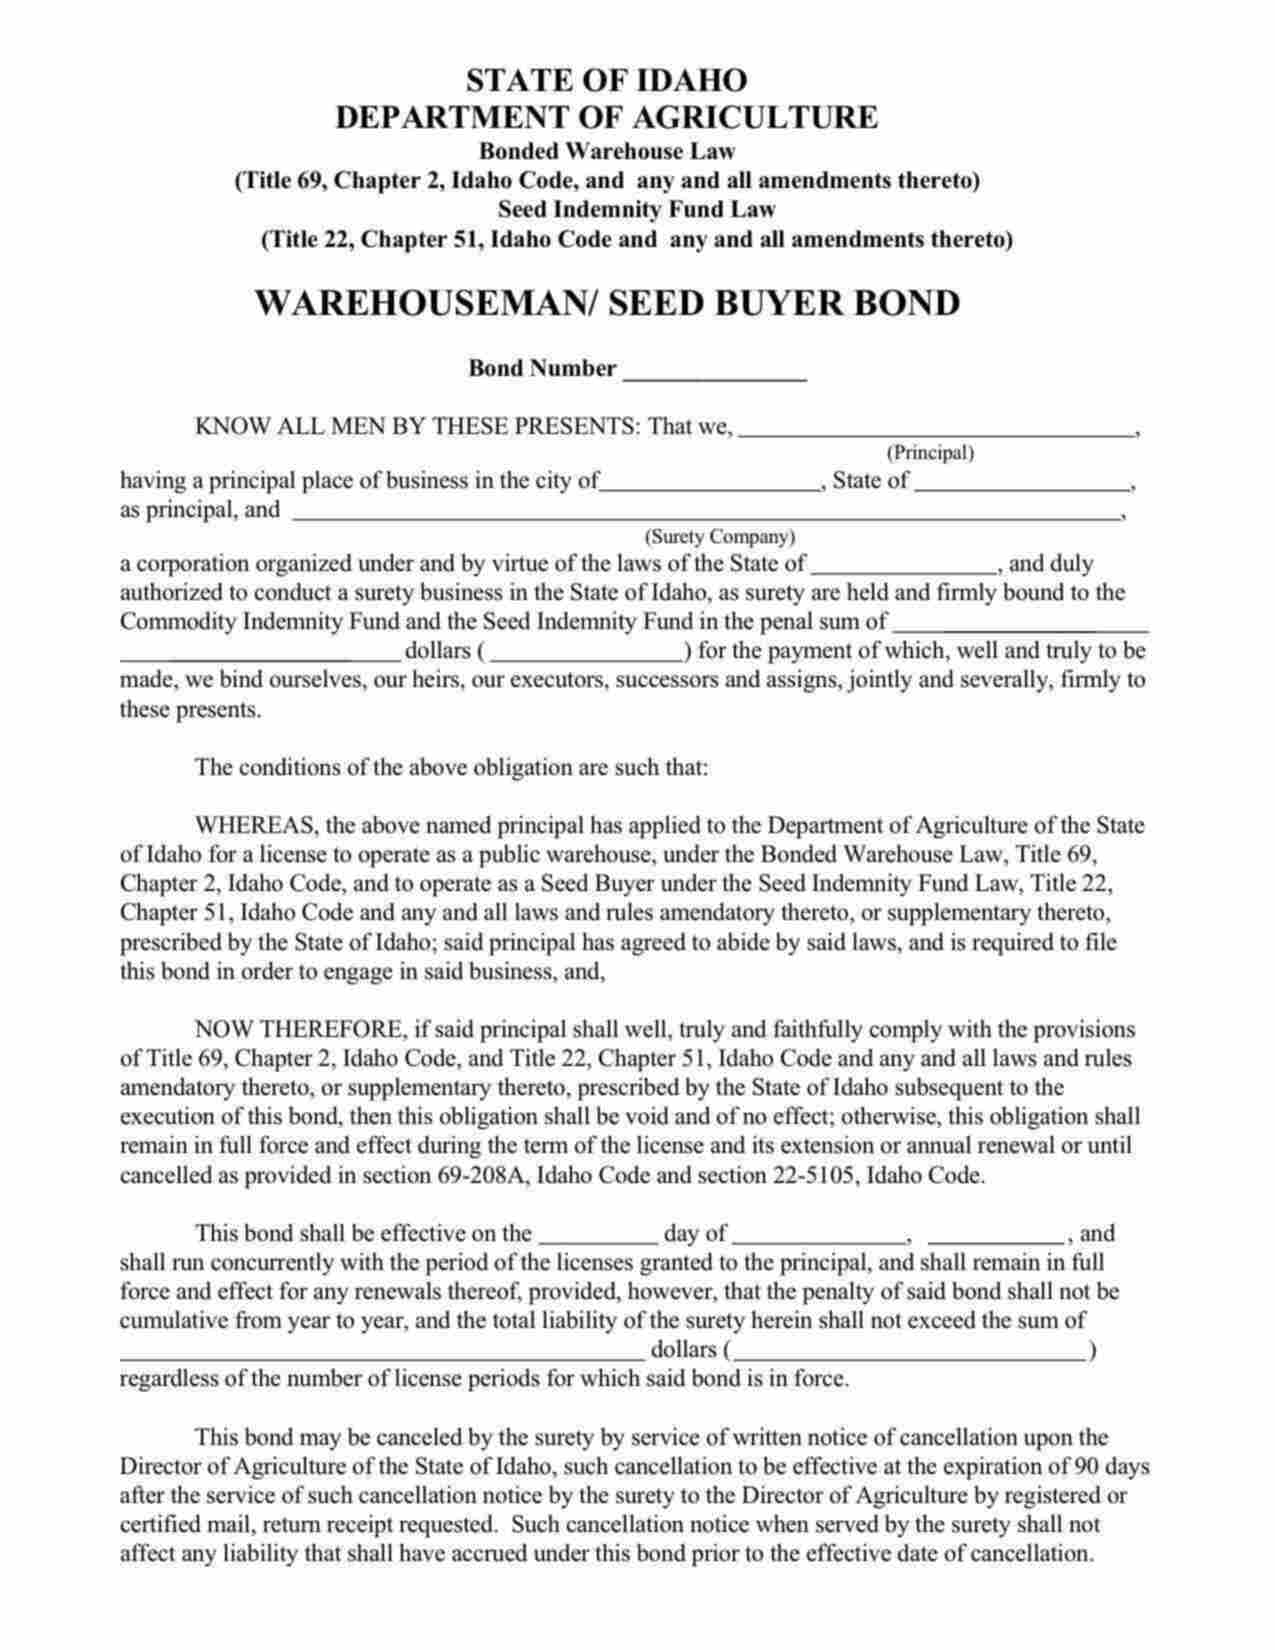 Idaho Warehouseman/Seed Buyer Bond Form